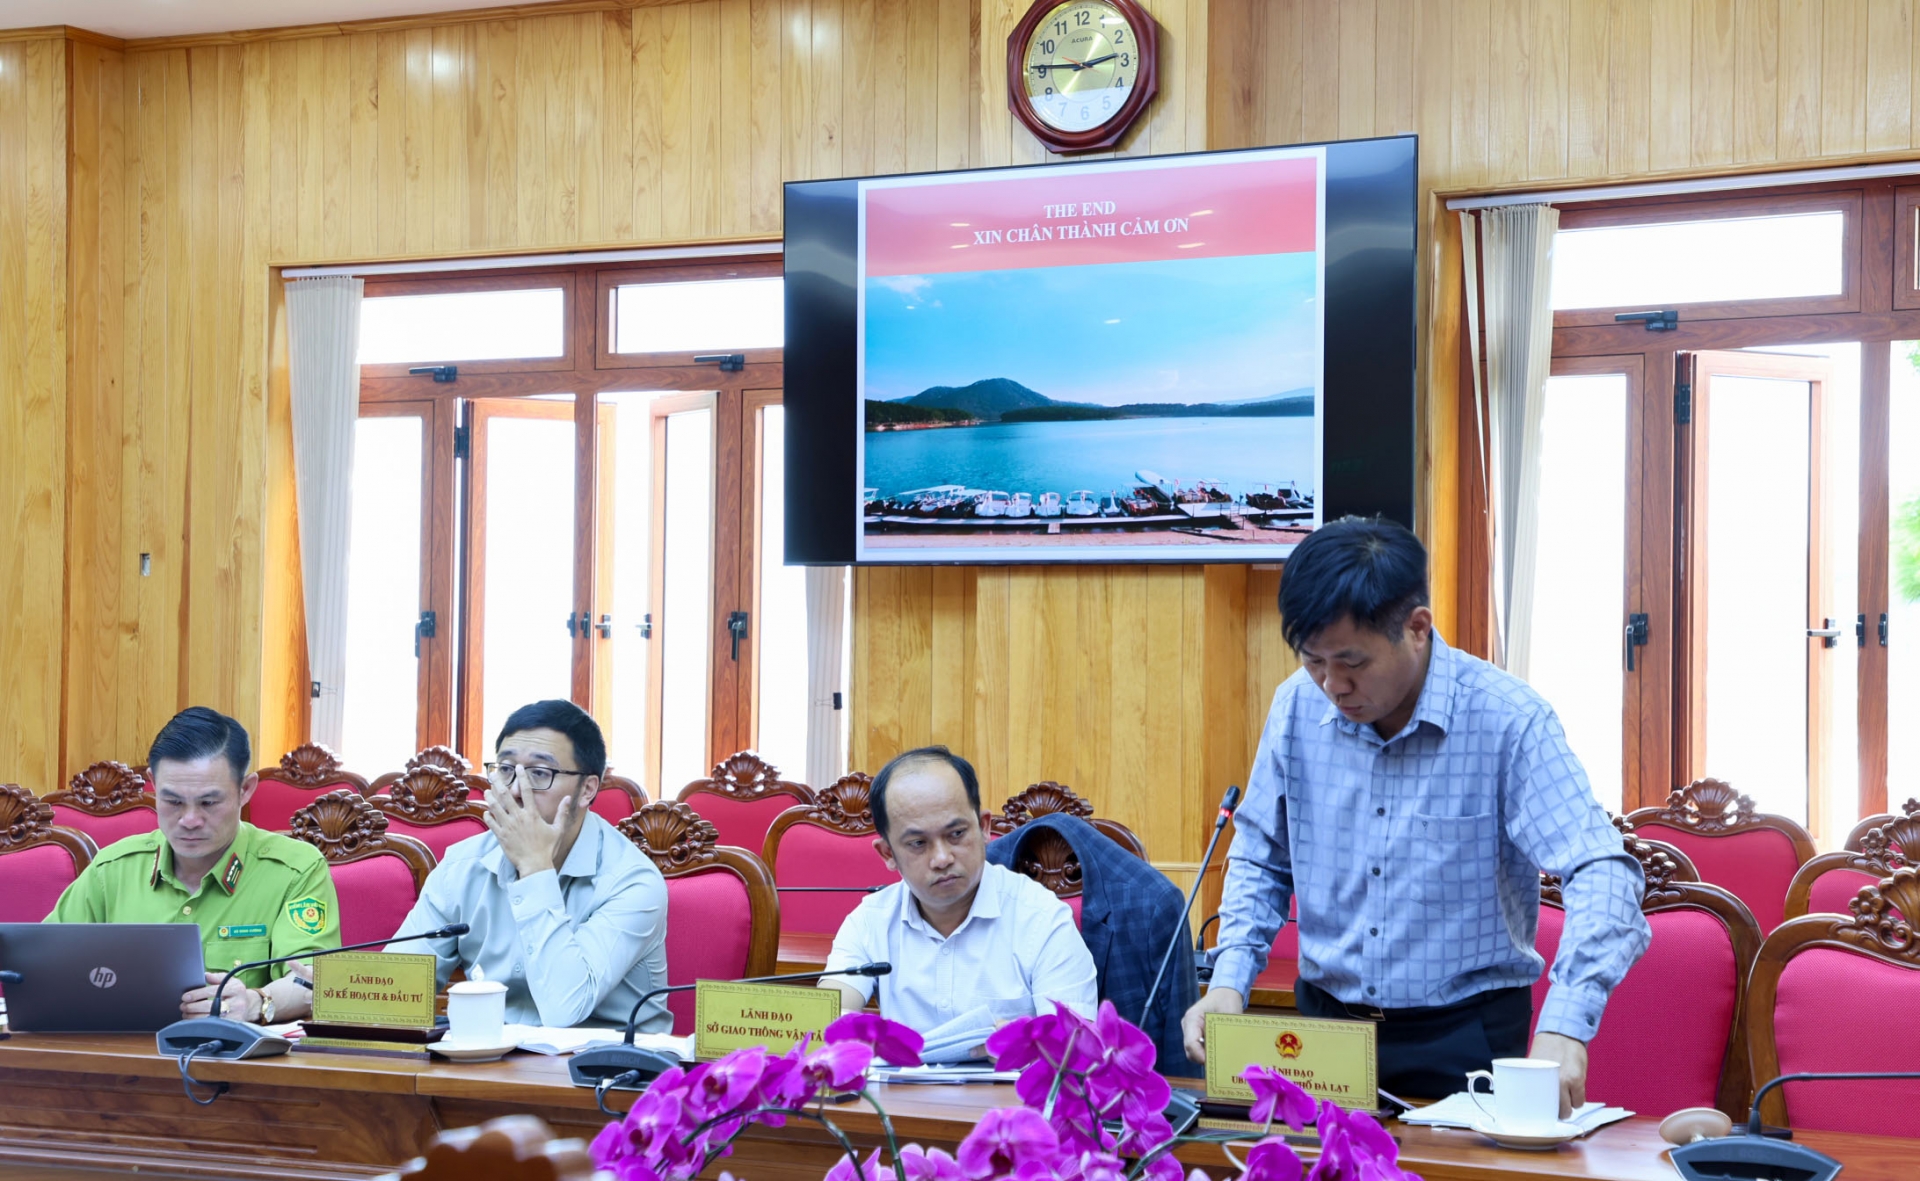 -	Ông Nguyễn Văn Sơn – Phó Chủ tịch UBND TP Đà Lạt trao đổi các hoạt động phối hợp với Ban Quản lý KDLQG hồ Tuyền Lâm